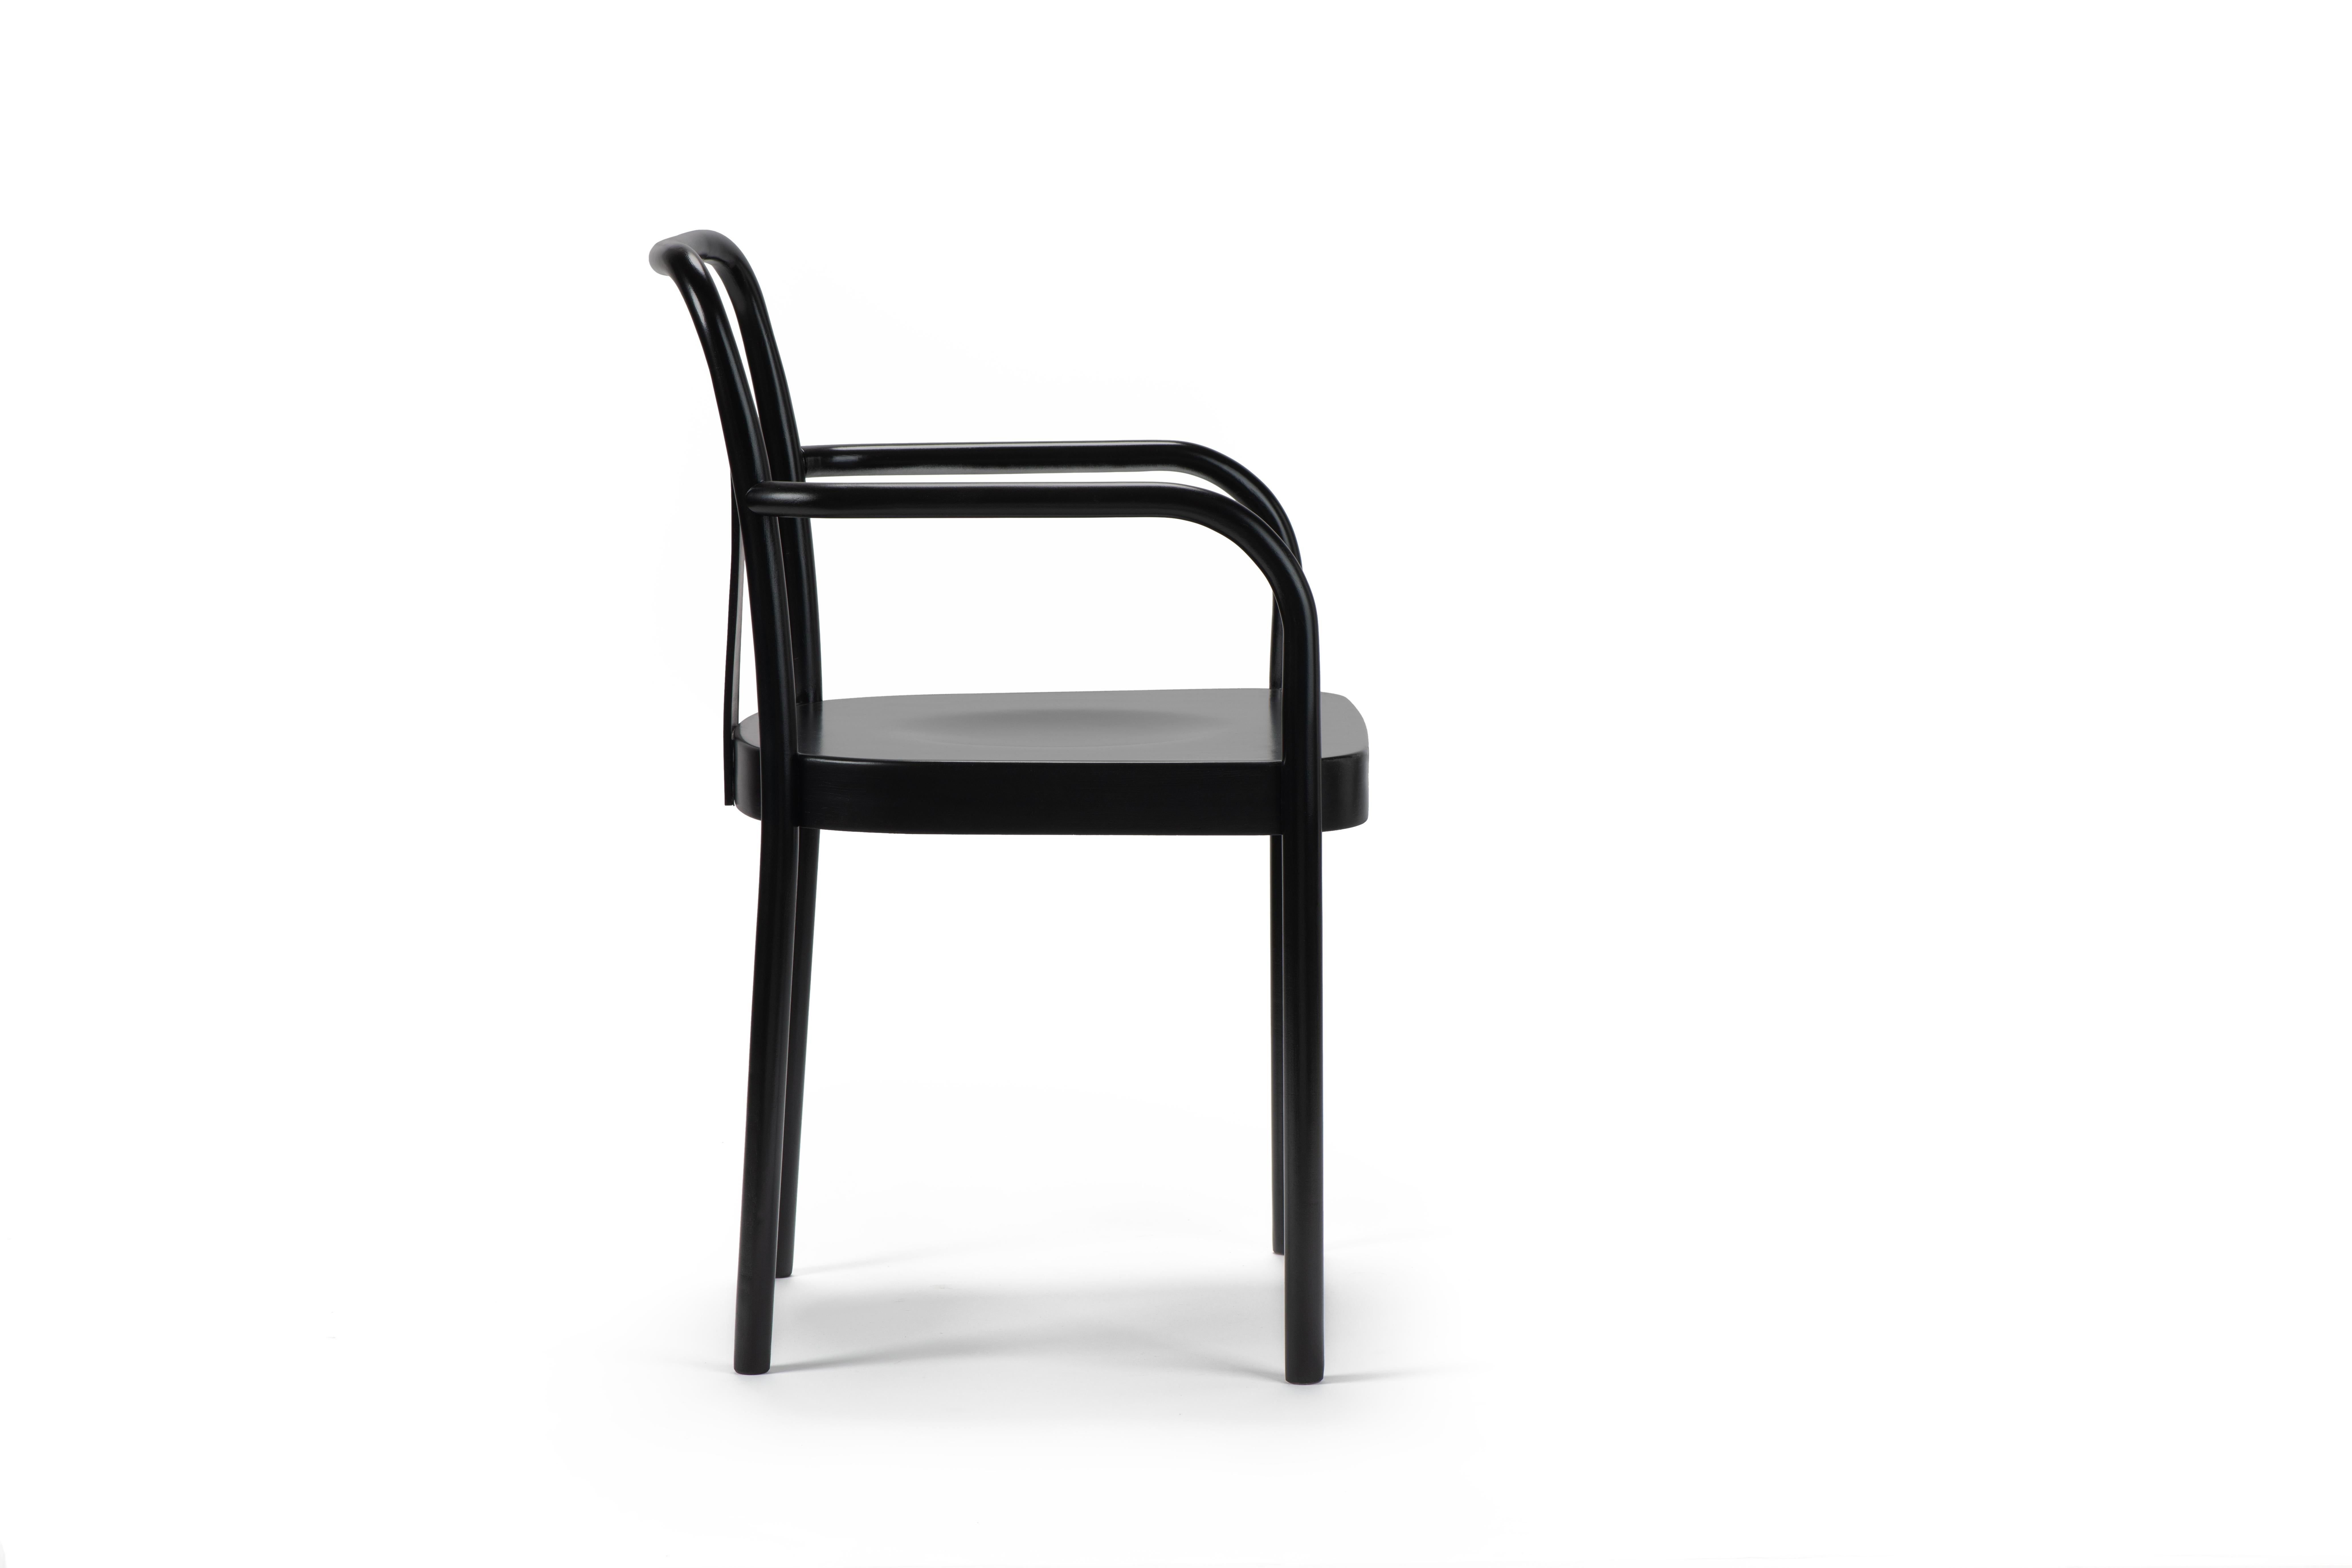 Le style rigoureux de Michael Anastassiades définit la nouvelle chaise SUGILOO en bois courbé avec assise en bois ou rembourrée, proposée avec et sans dossier en bois. Une proposition résolument contemporaine dans sa forme pure et essentielle : la